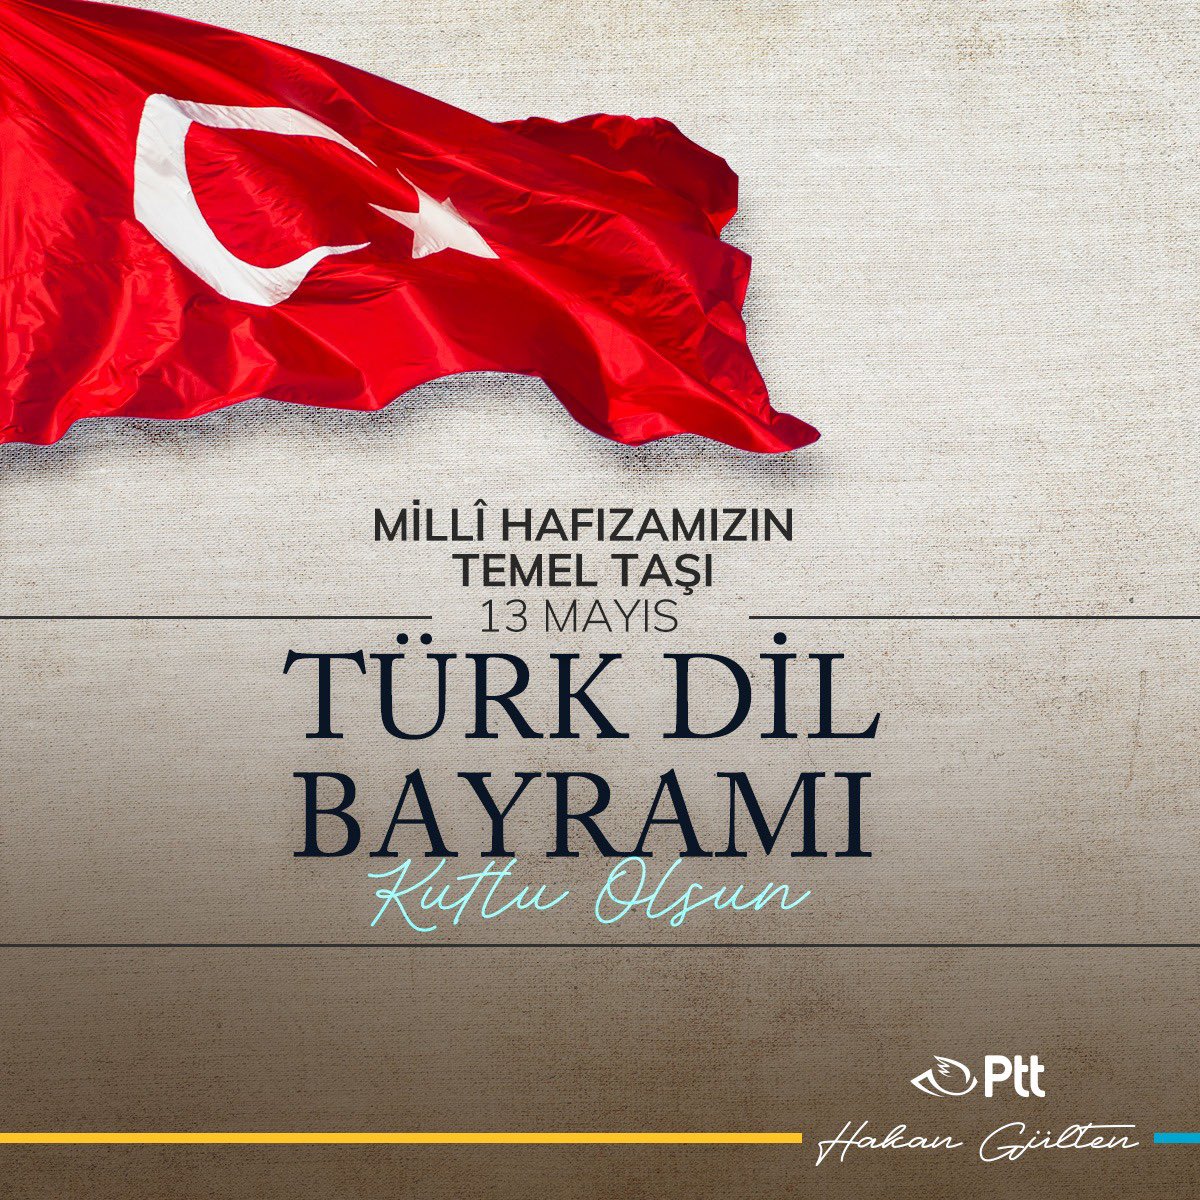 Millî kültürümüzün en köklü mirası, binlerce yıllık tarihimizin en kıymetli değeri olan Türkçemizin resmi dil olarak kabul edilişinin 747. yıl dönümü kutlu olsun.

#13MayısTürkDilBayramı 🇹🇷